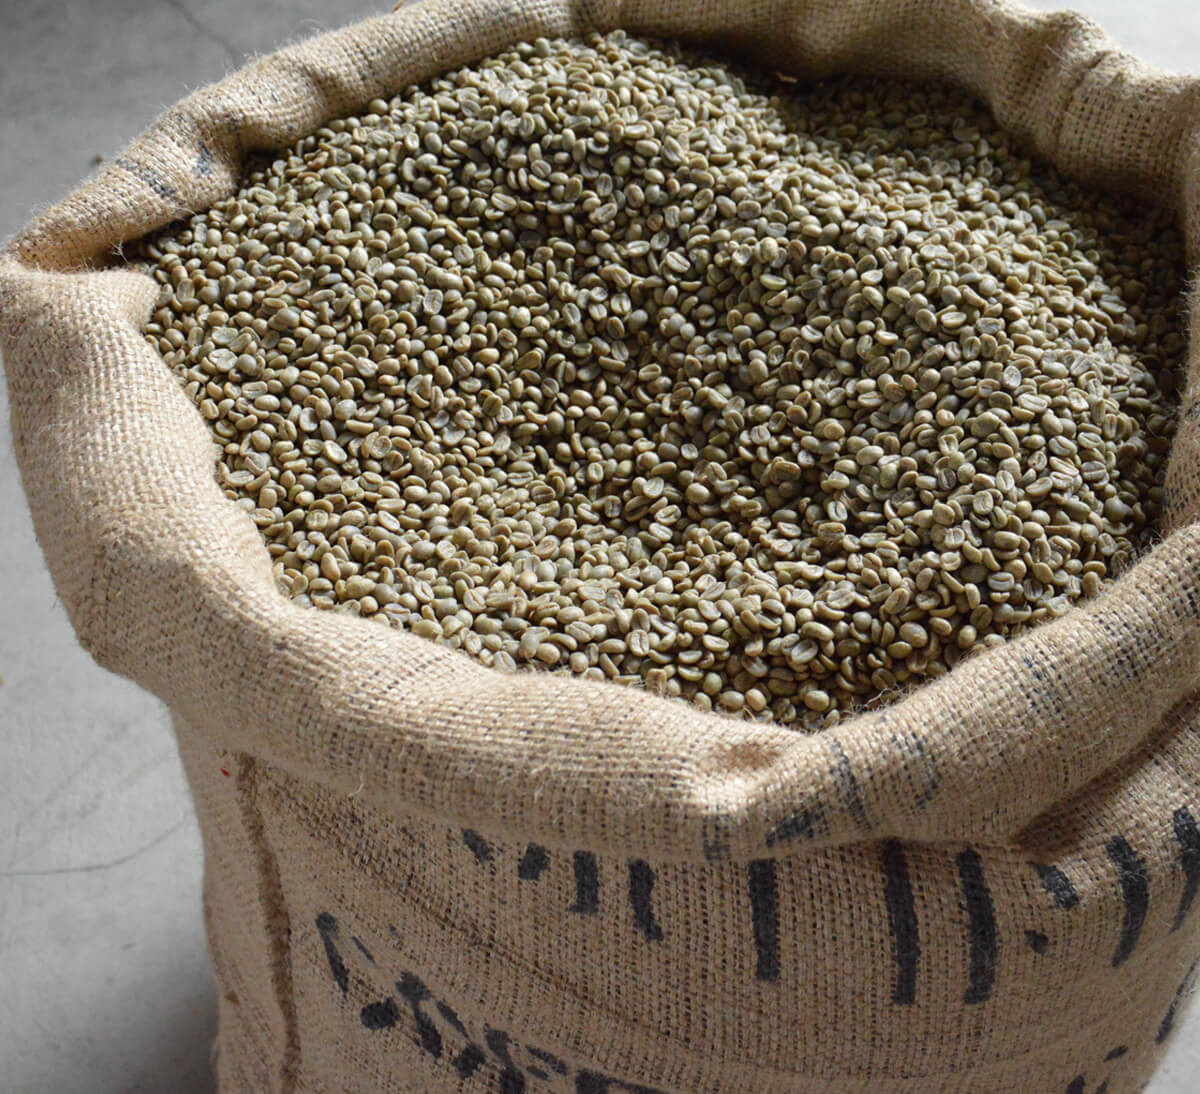 Café grains Pérou - 1 kg - ETHIQUABLE